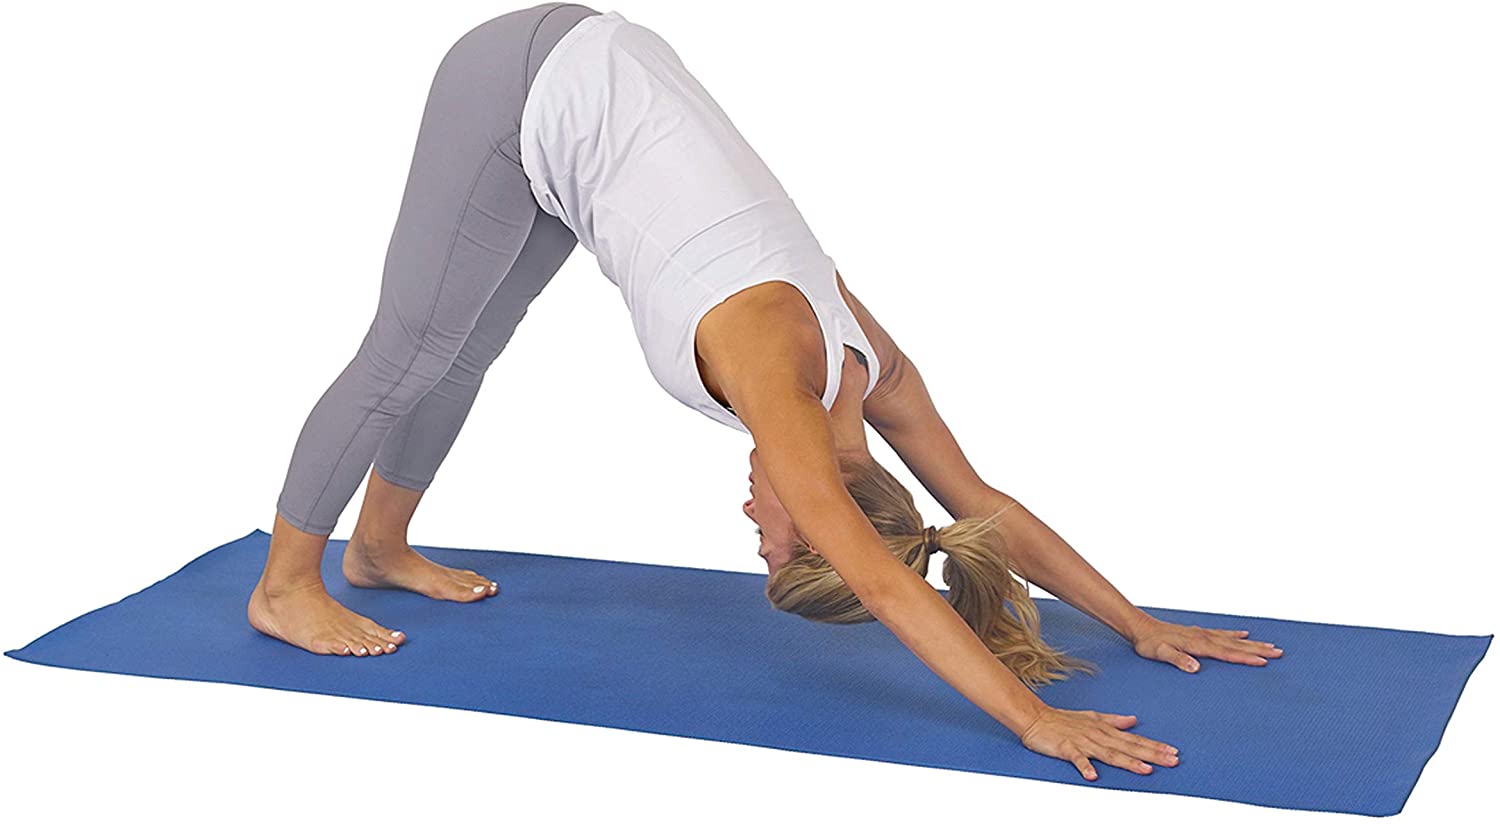  Funic - Esterilla de yoga (0.591 in, extra gruesa,  antideslizante, para todos los tipos de yoga, pilates y ejercicios de  suelo, para gimnasio en casa, esterillas de espuma para gimnasio), Azul